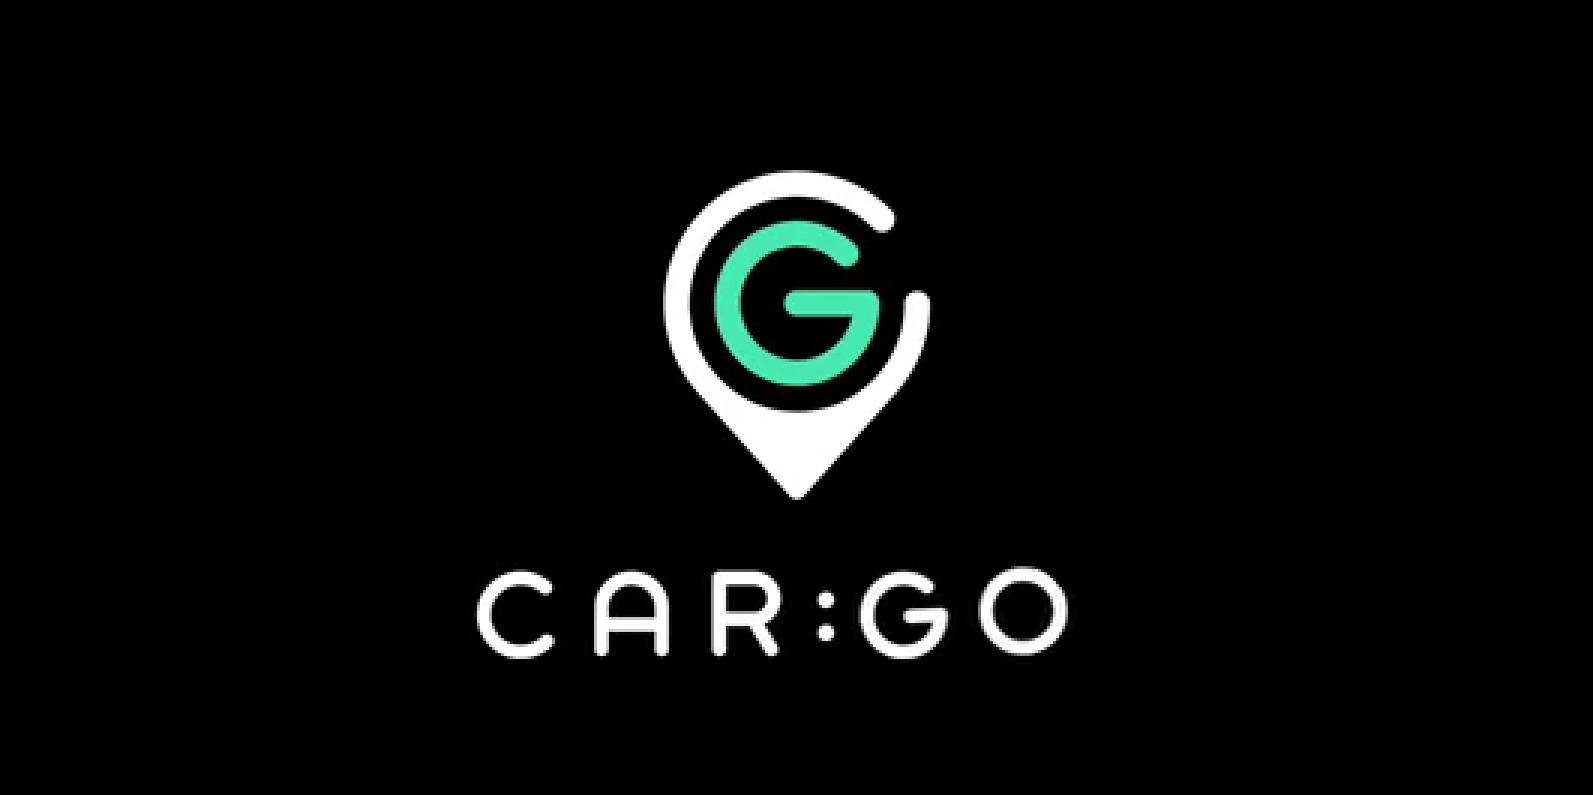 Aplikacija CarGo, logo